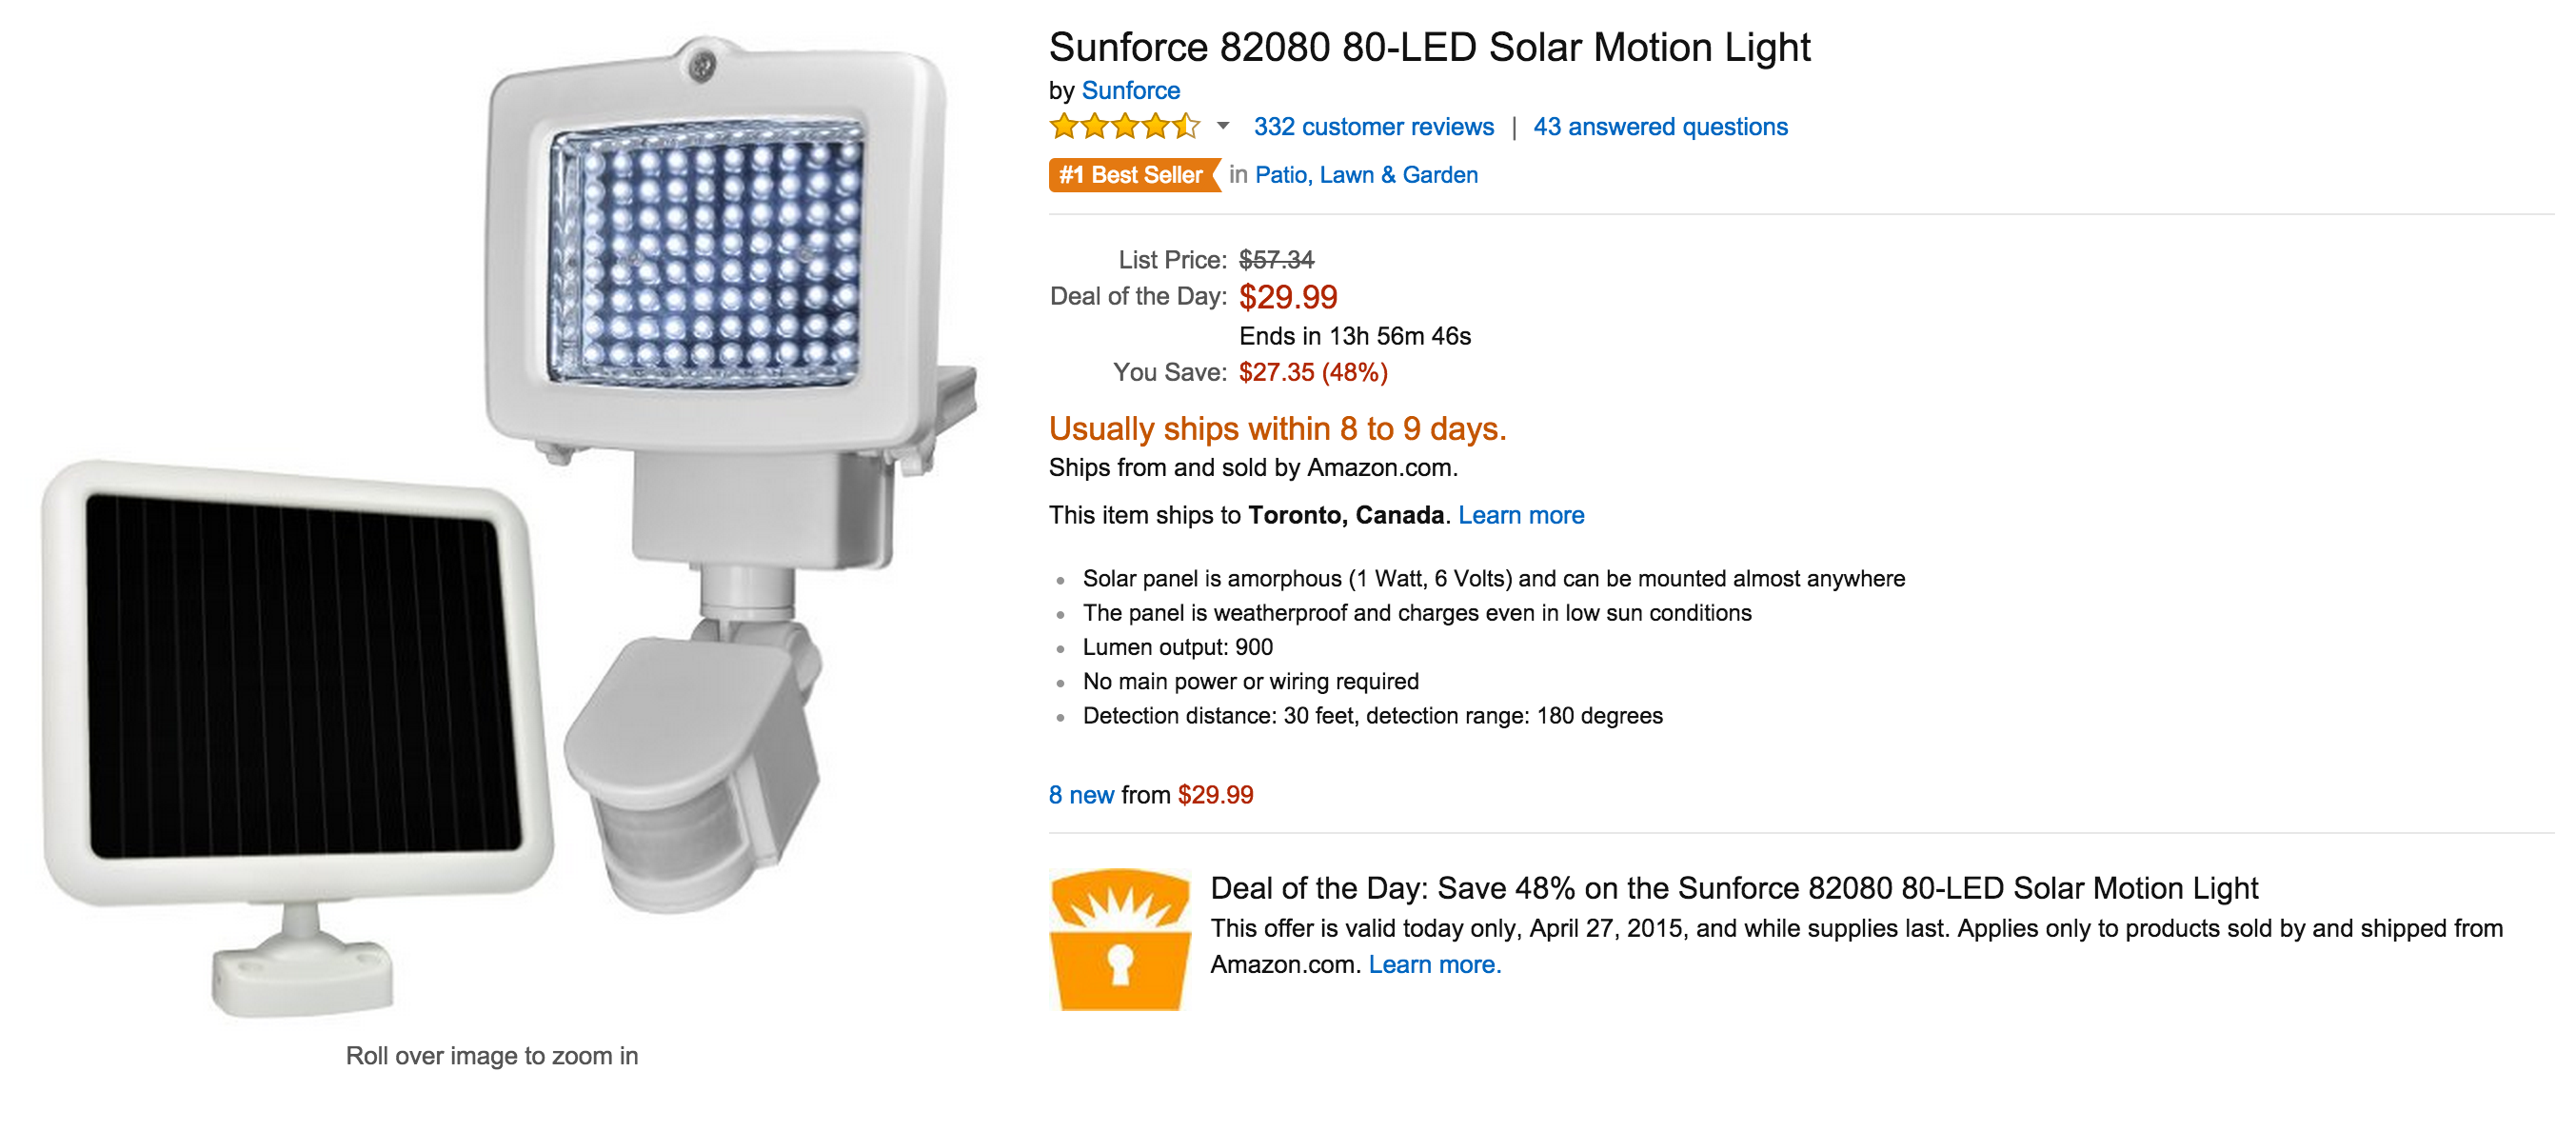 Sunforce 82080 80-LED Solar Motion Light